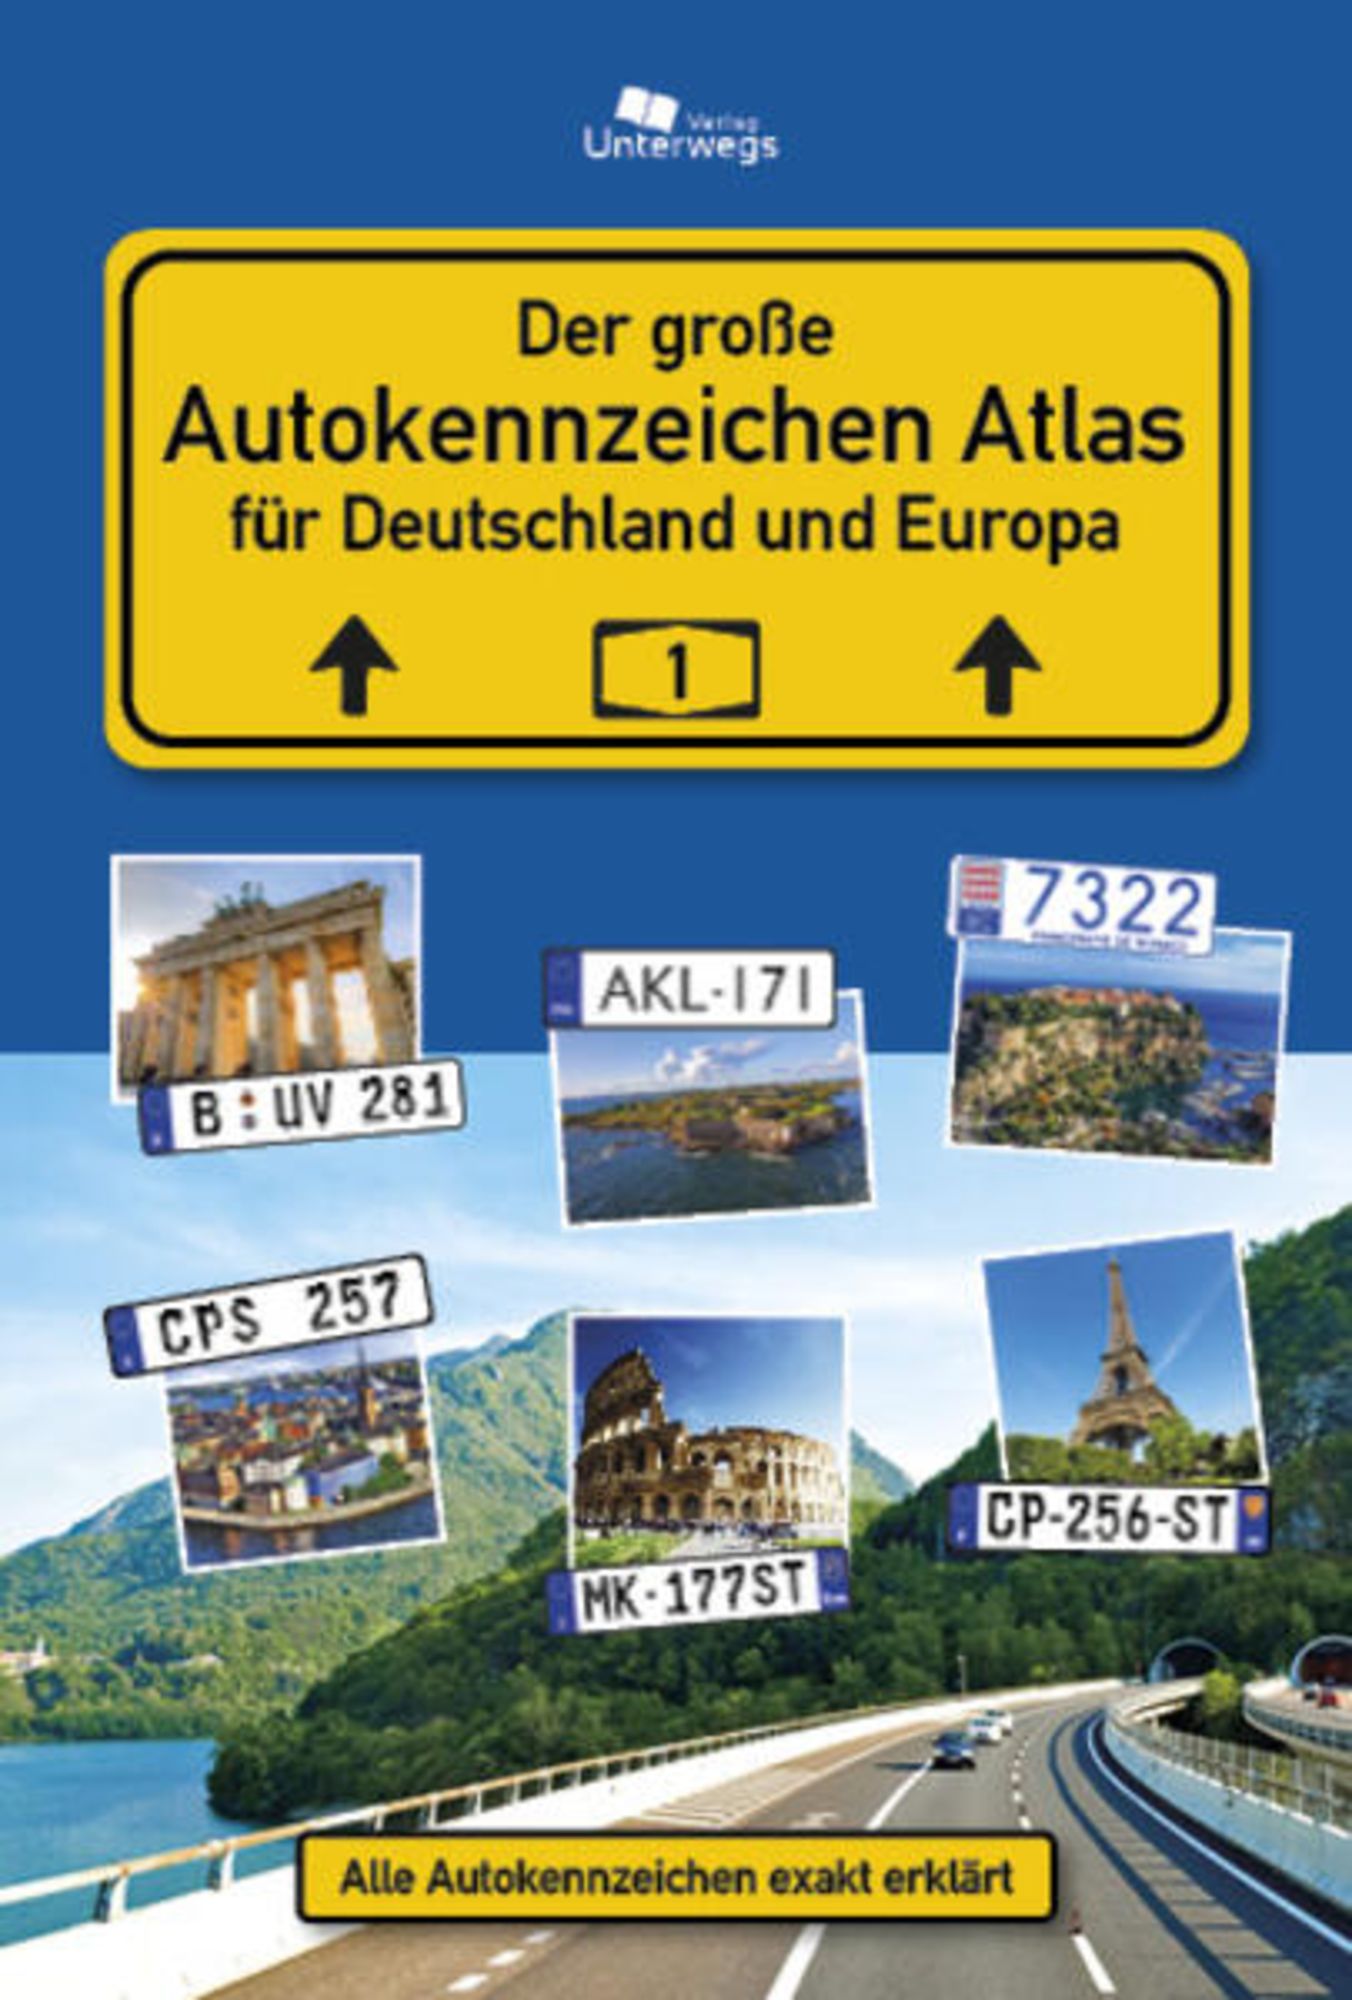 https://images.thalia.media/-/BF2000-2000/bbe0401cd5d945a2bc82335ca75a0816/der-grosse-autokennzeichen-atlas-deutschland-und-europa-kunststoff-einband-manfred-klemann.jpeg